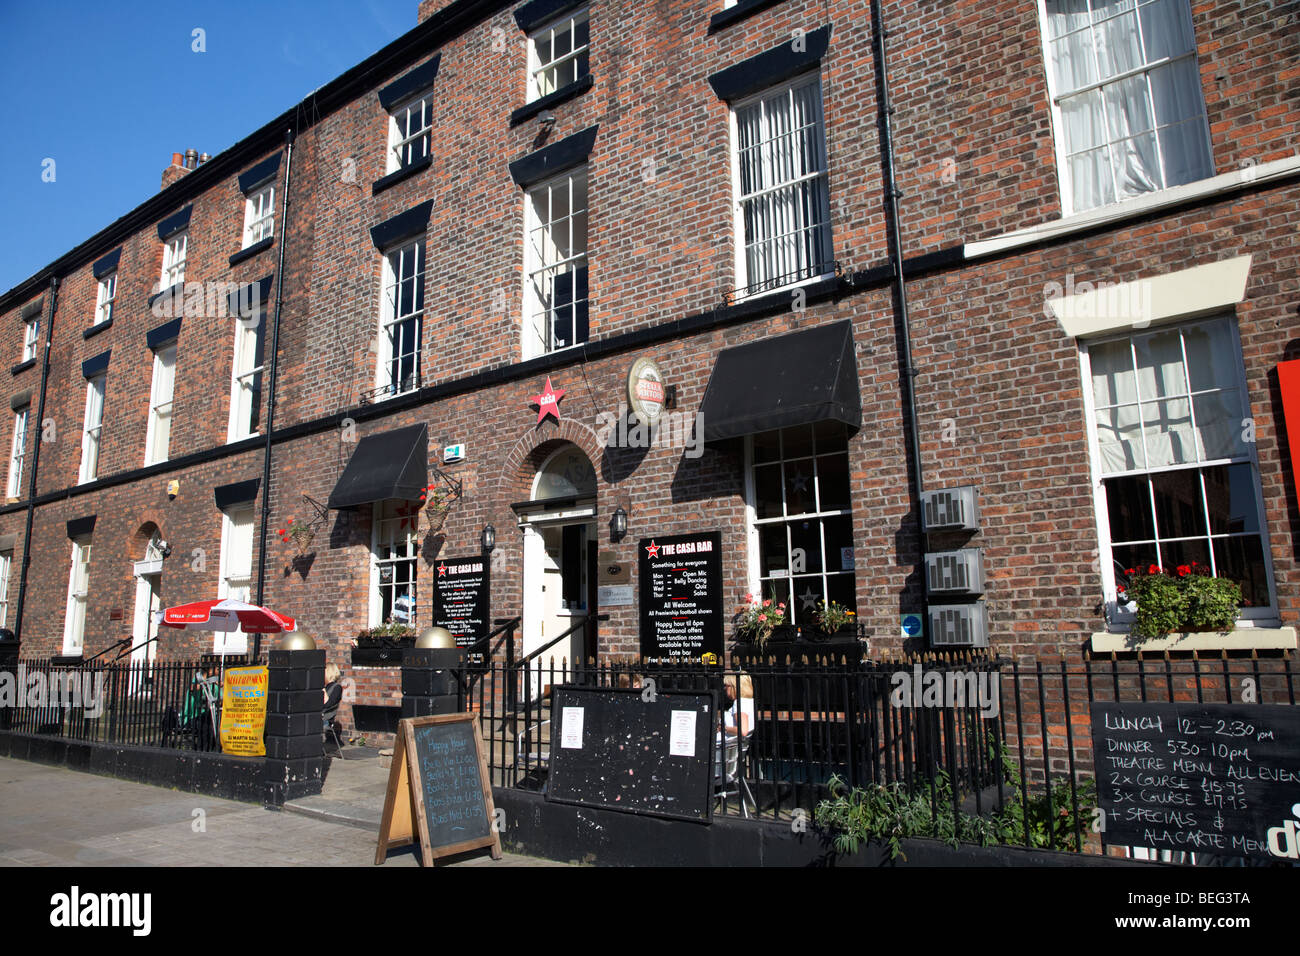 die Casa bar einer der vielen Bars und Restaurants in Hope Street georgianischen Architektur Liverpool Merseyside England uk Stockfoto